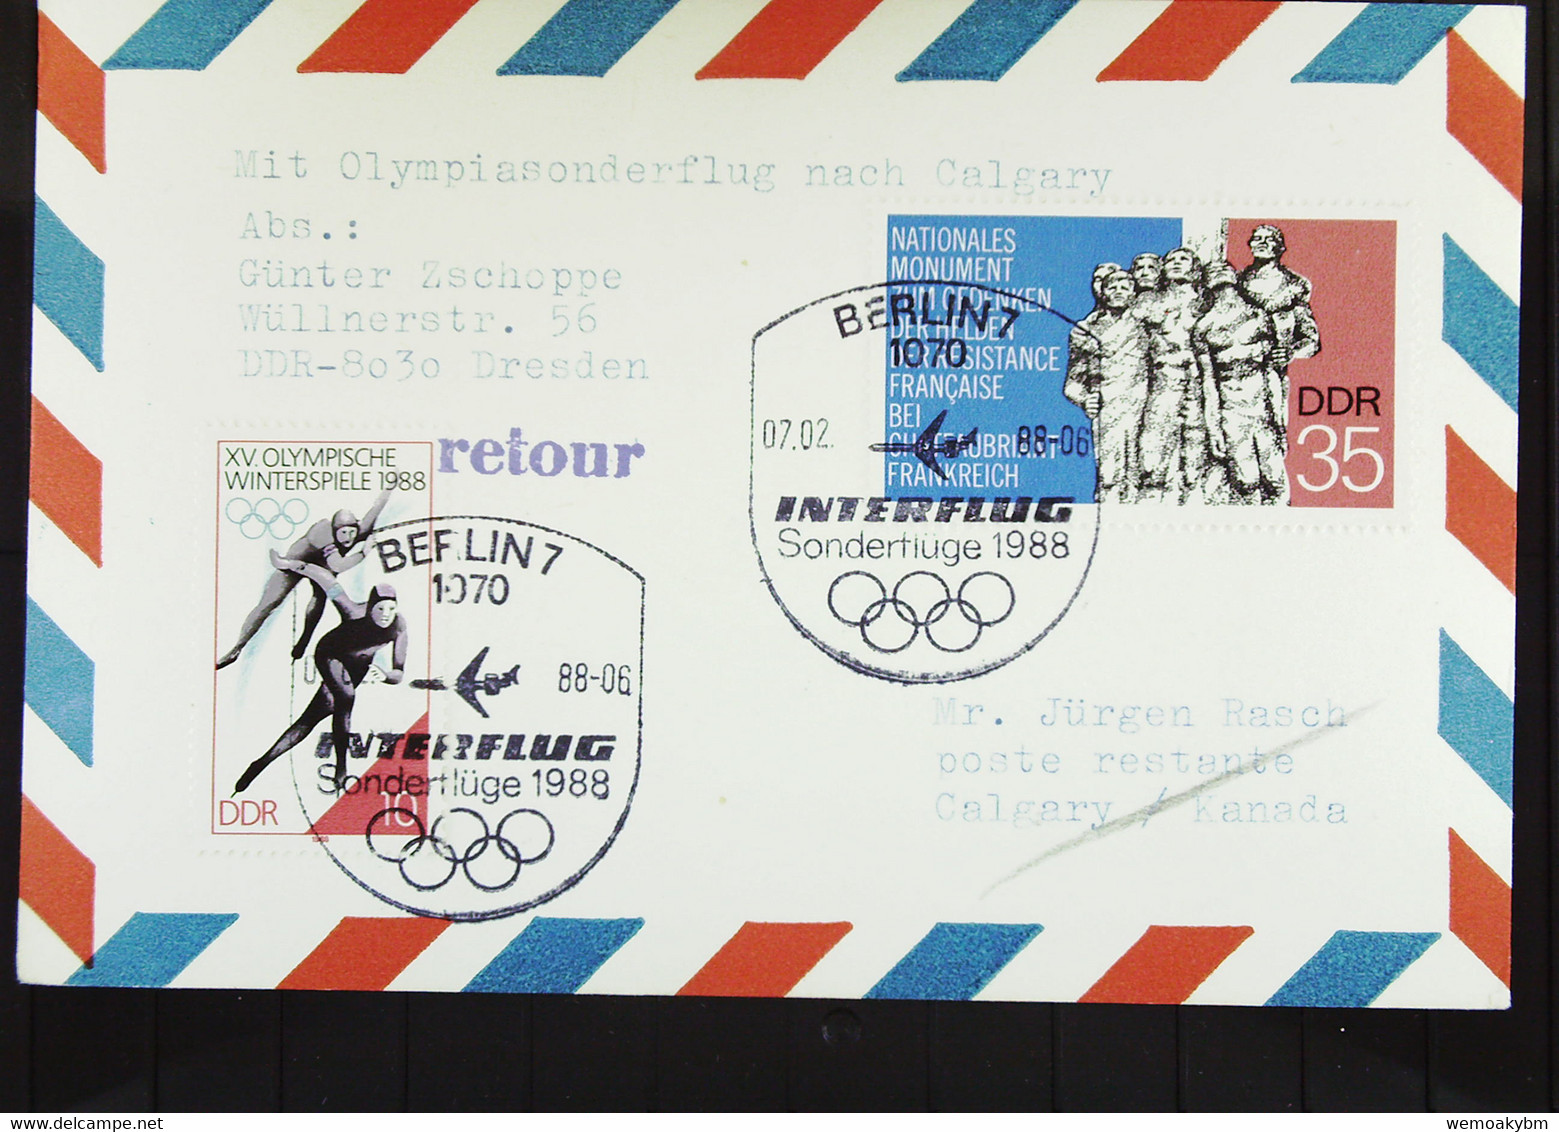 Luftpost-Karte Zu Den Olymp. Spielen 1988 Nach Calgary So-St. 1070 Berlin 7.2.88. Letzte Teilnahme Eines DDR-Teams Wi - Posta Aerea